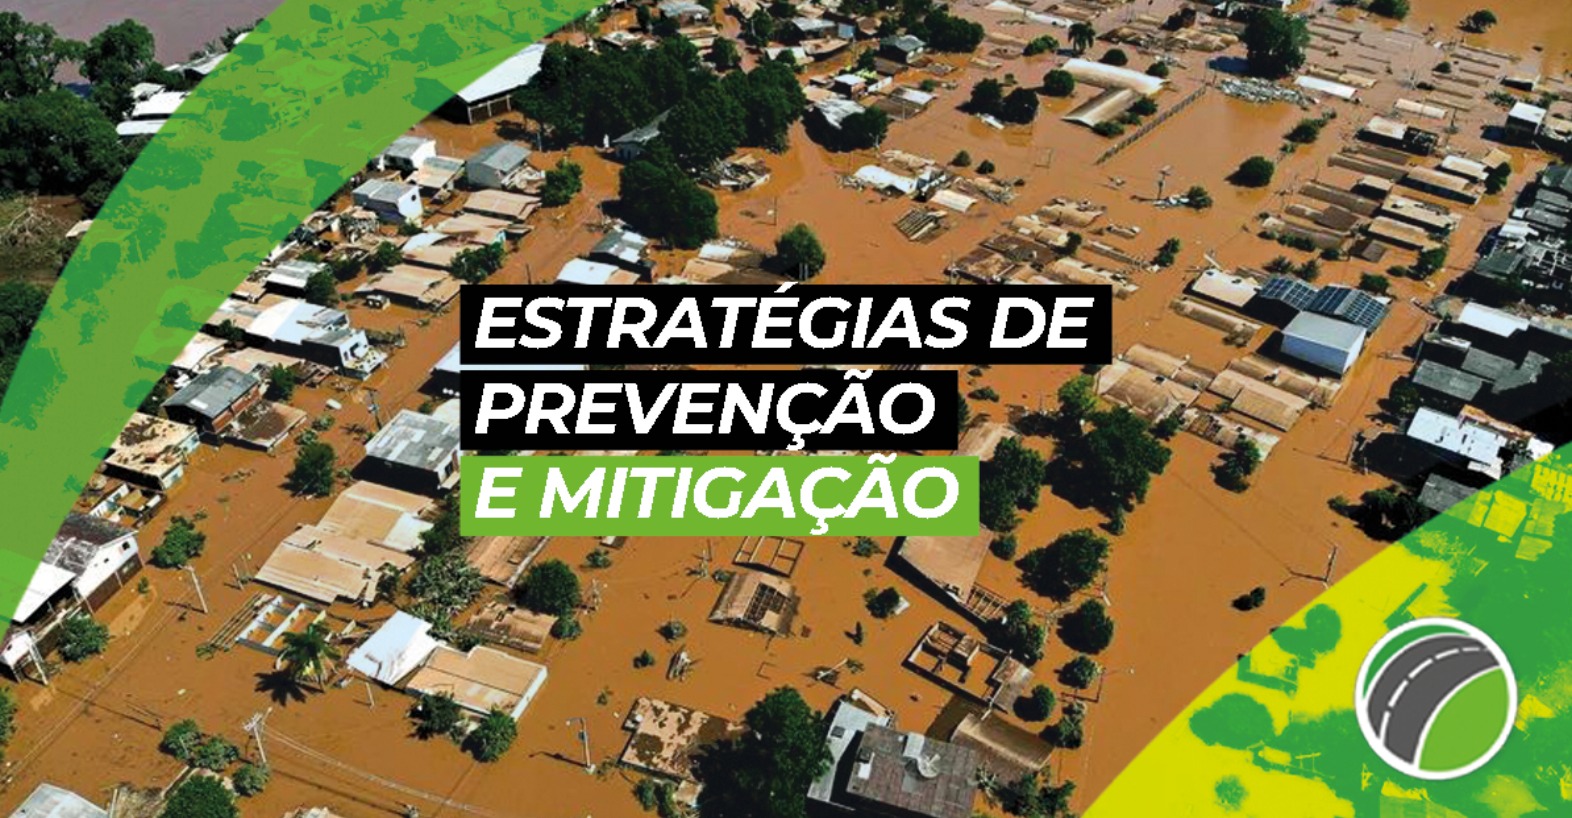 Estratégias de Prevenção e Mitigação: Práticas Sustentáveis Contra Enchentes